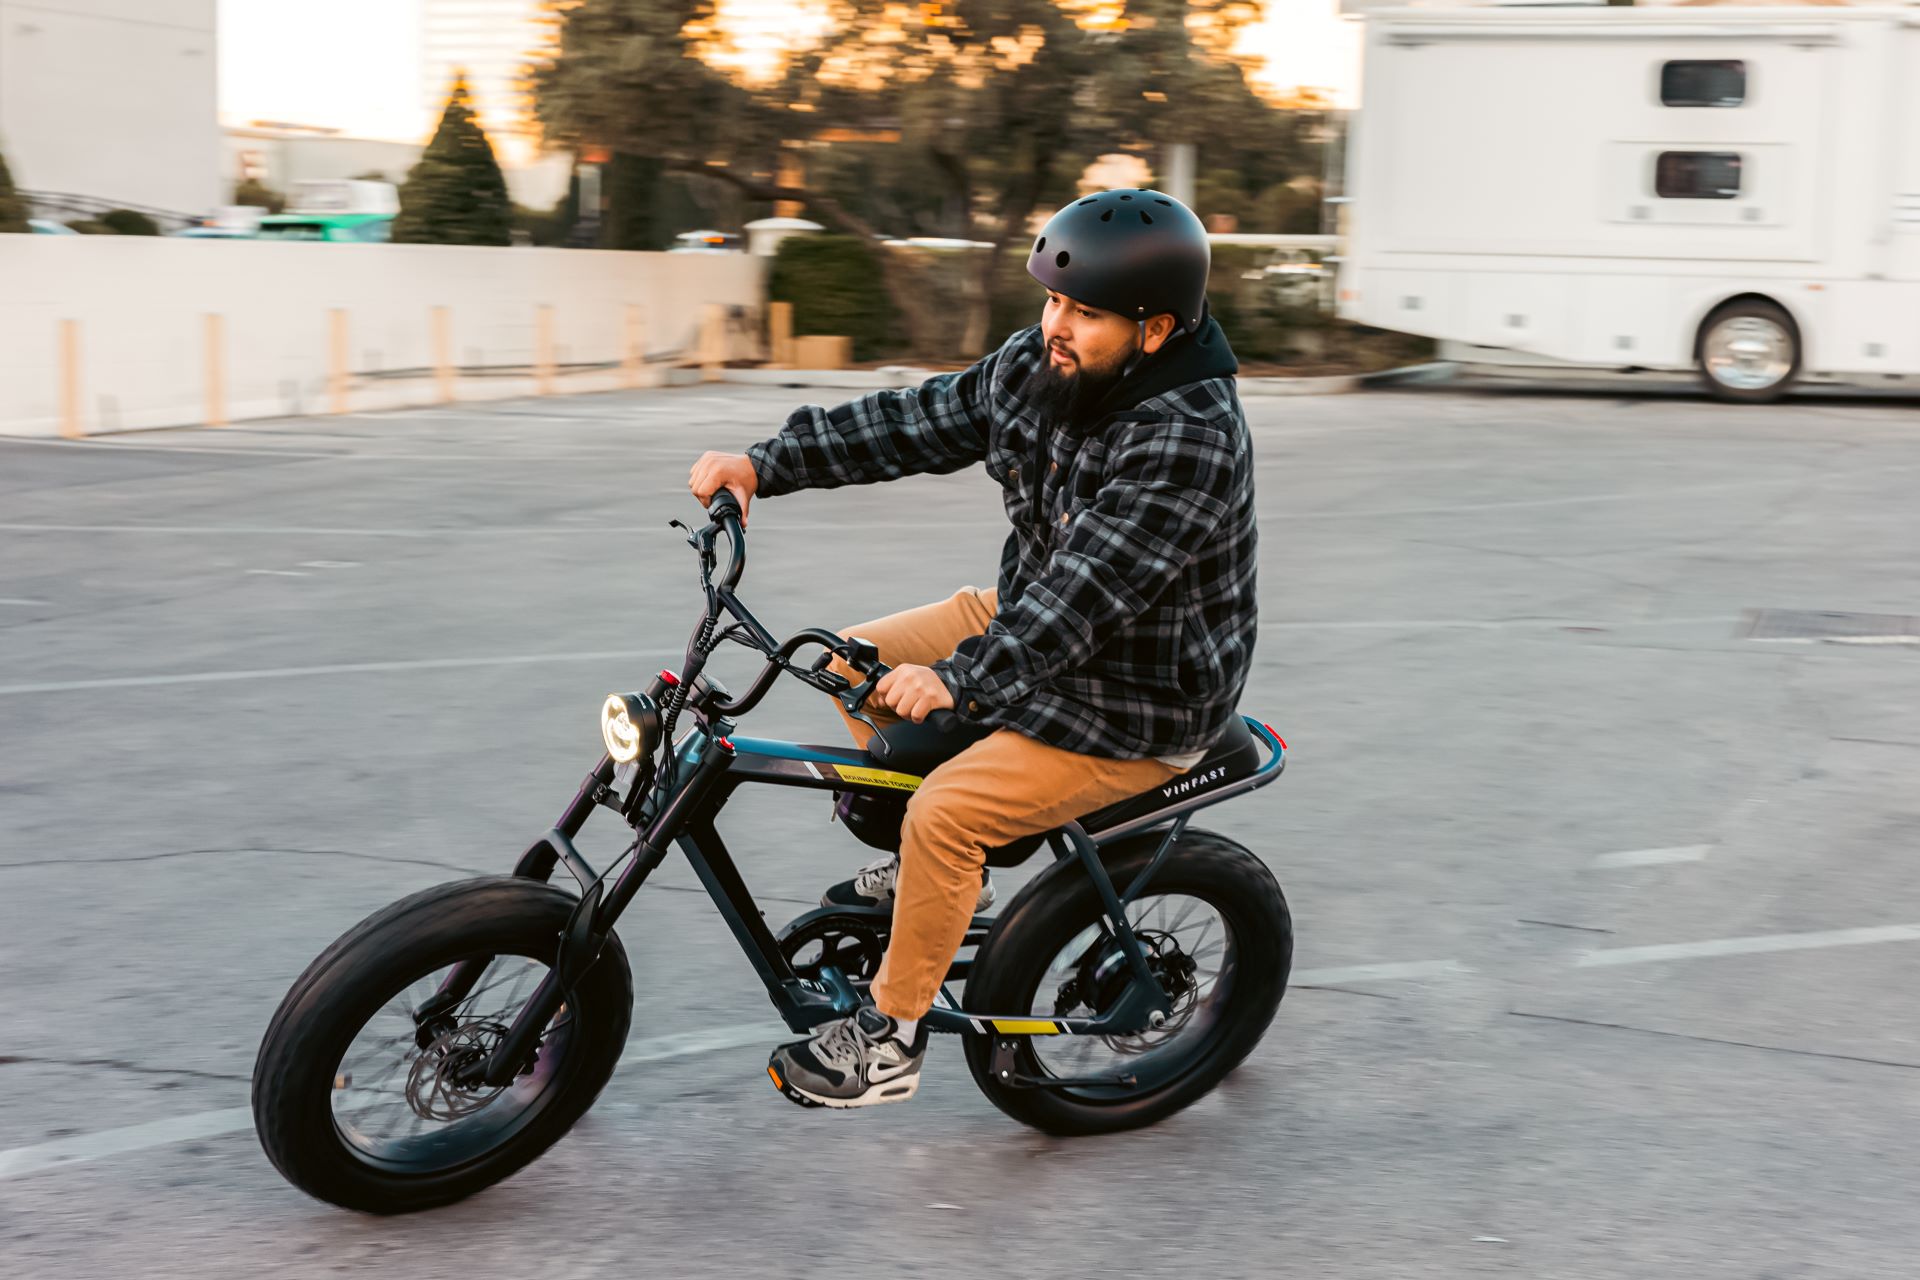 Tại CES 2024, VinFast chính thức ra mắt thị trường Mỹ mẫu xe đạp điện DrgnFly. Với thông điệp “Dẫn lối cùng phong cách”, DrgnFly là lựa chọn độc đáo và thú vị góp phần mang di chuyển điện hóa đến gần hơn với mọi người, mọi nhà.